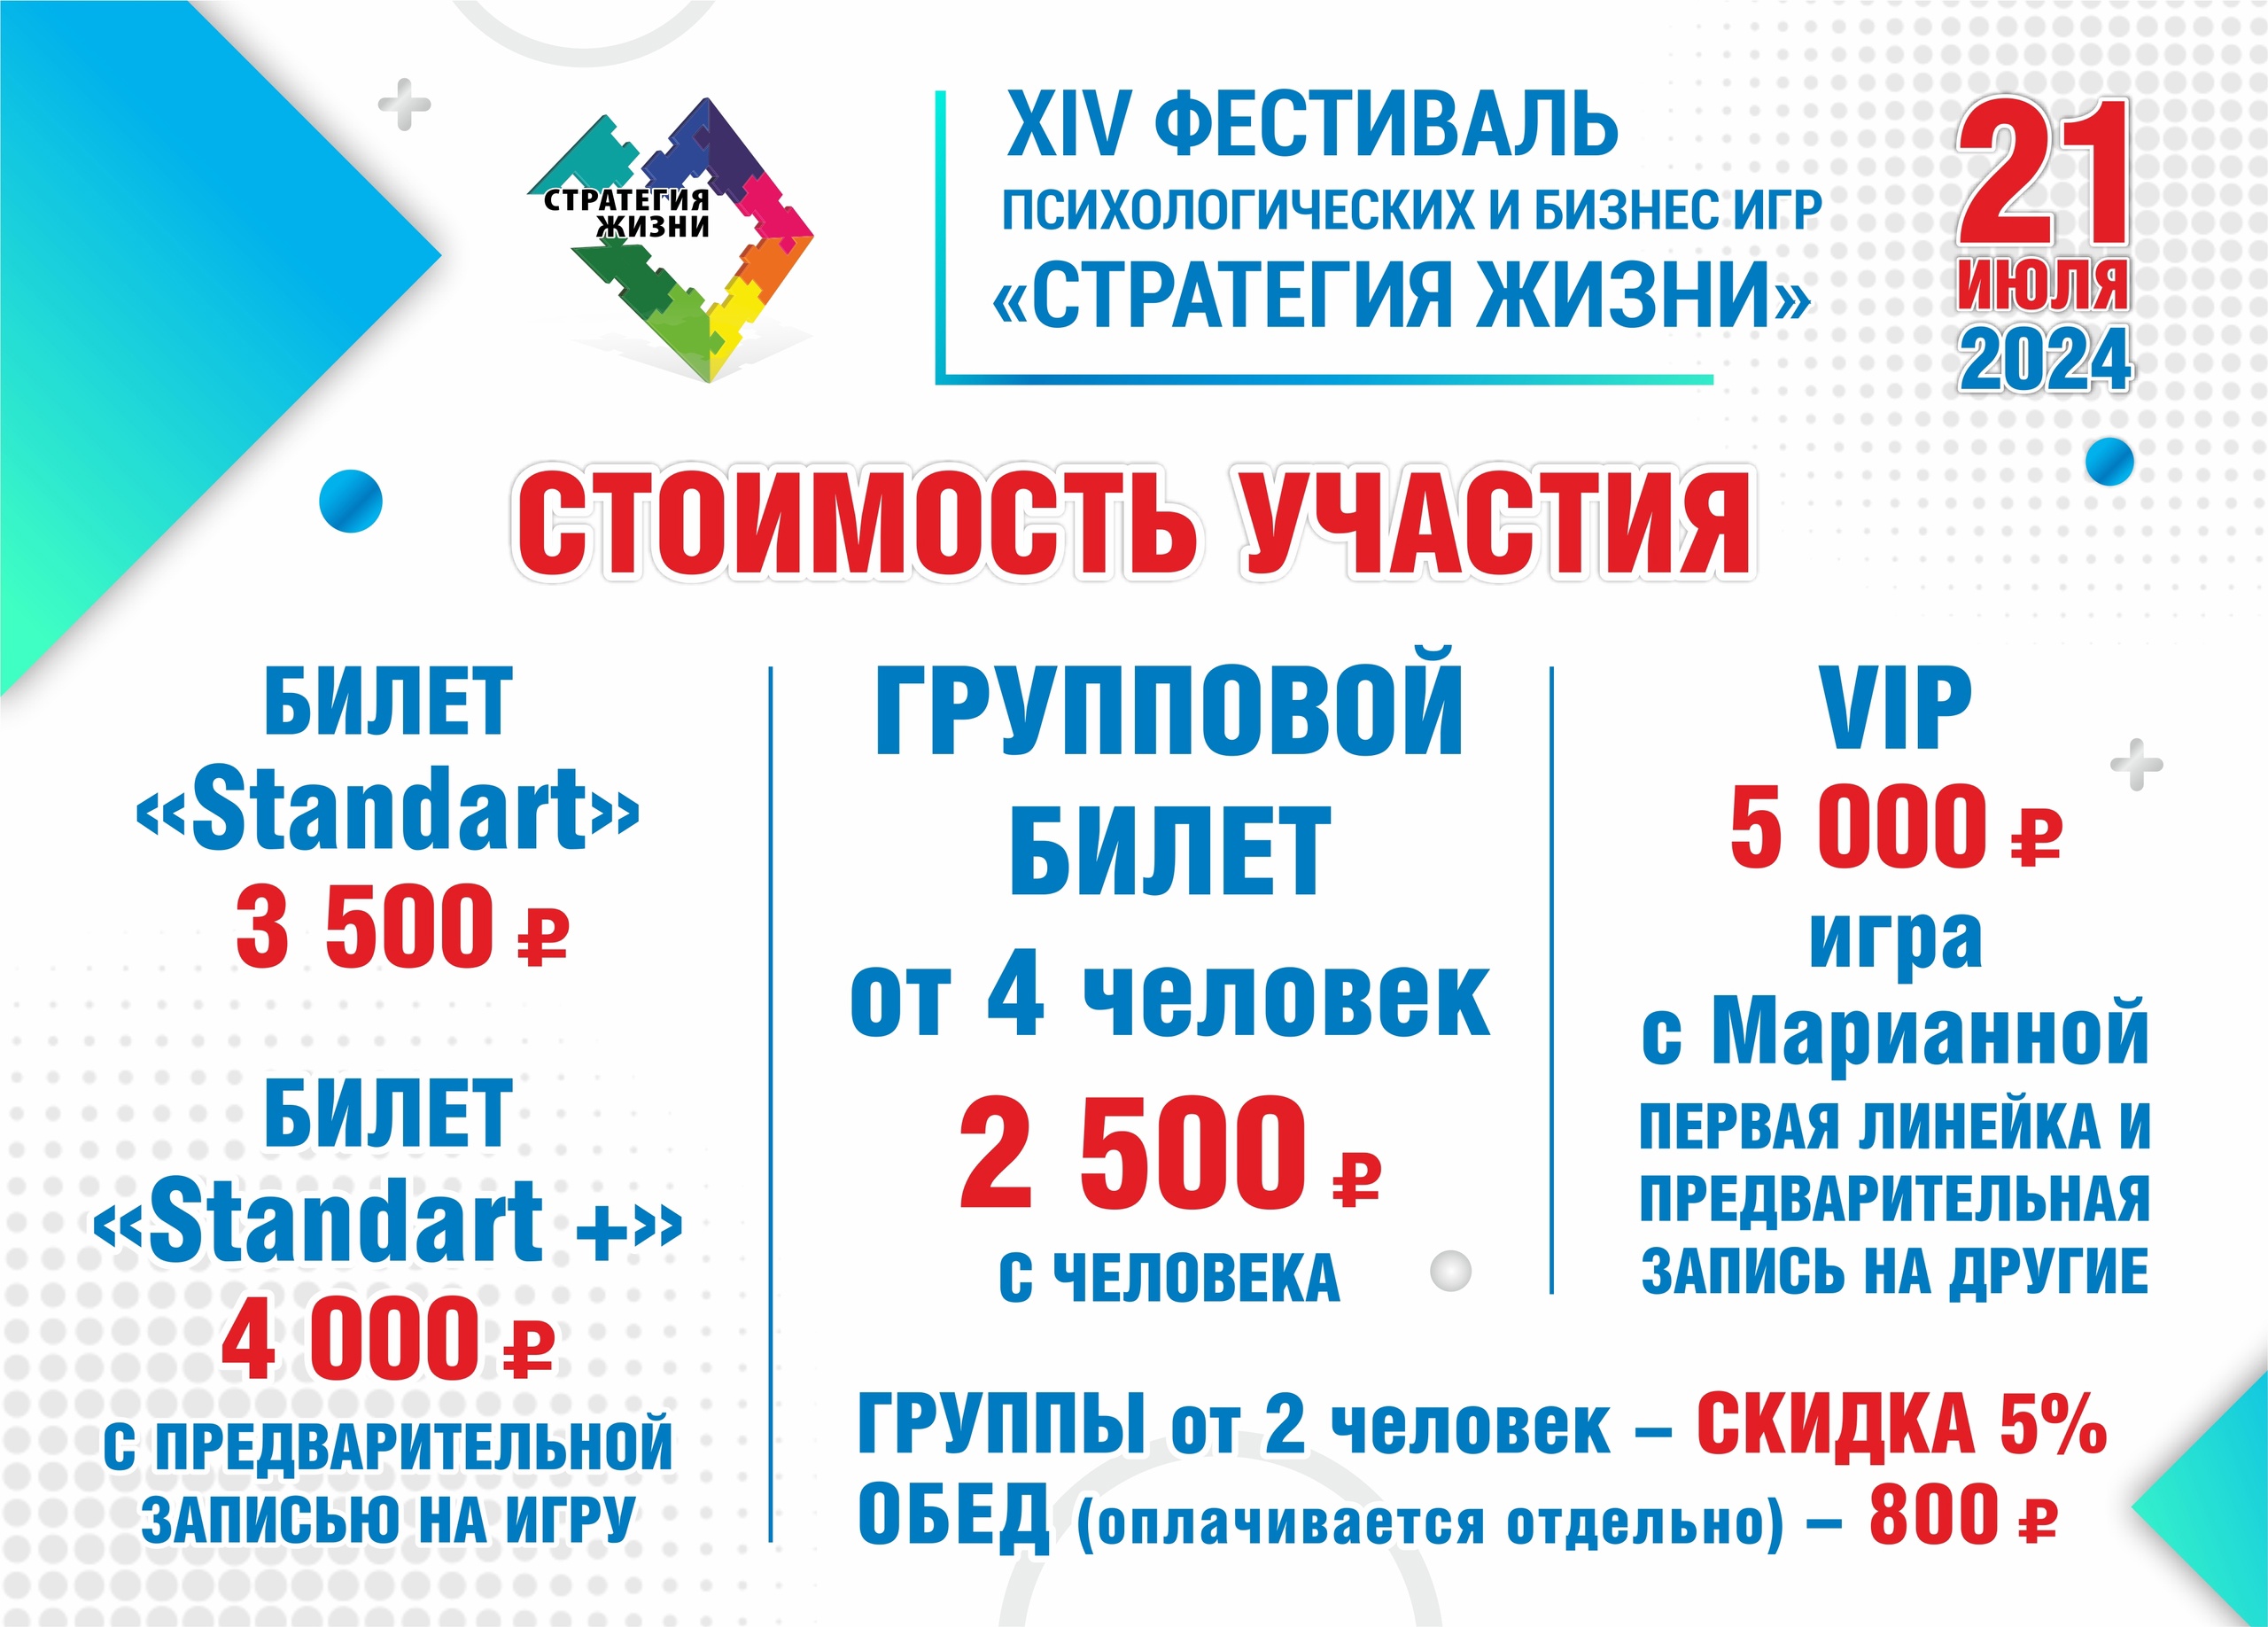 XIV Европейский фестиваль Психологических и Бизнес Игр «Стратегия Жизни» Калининград